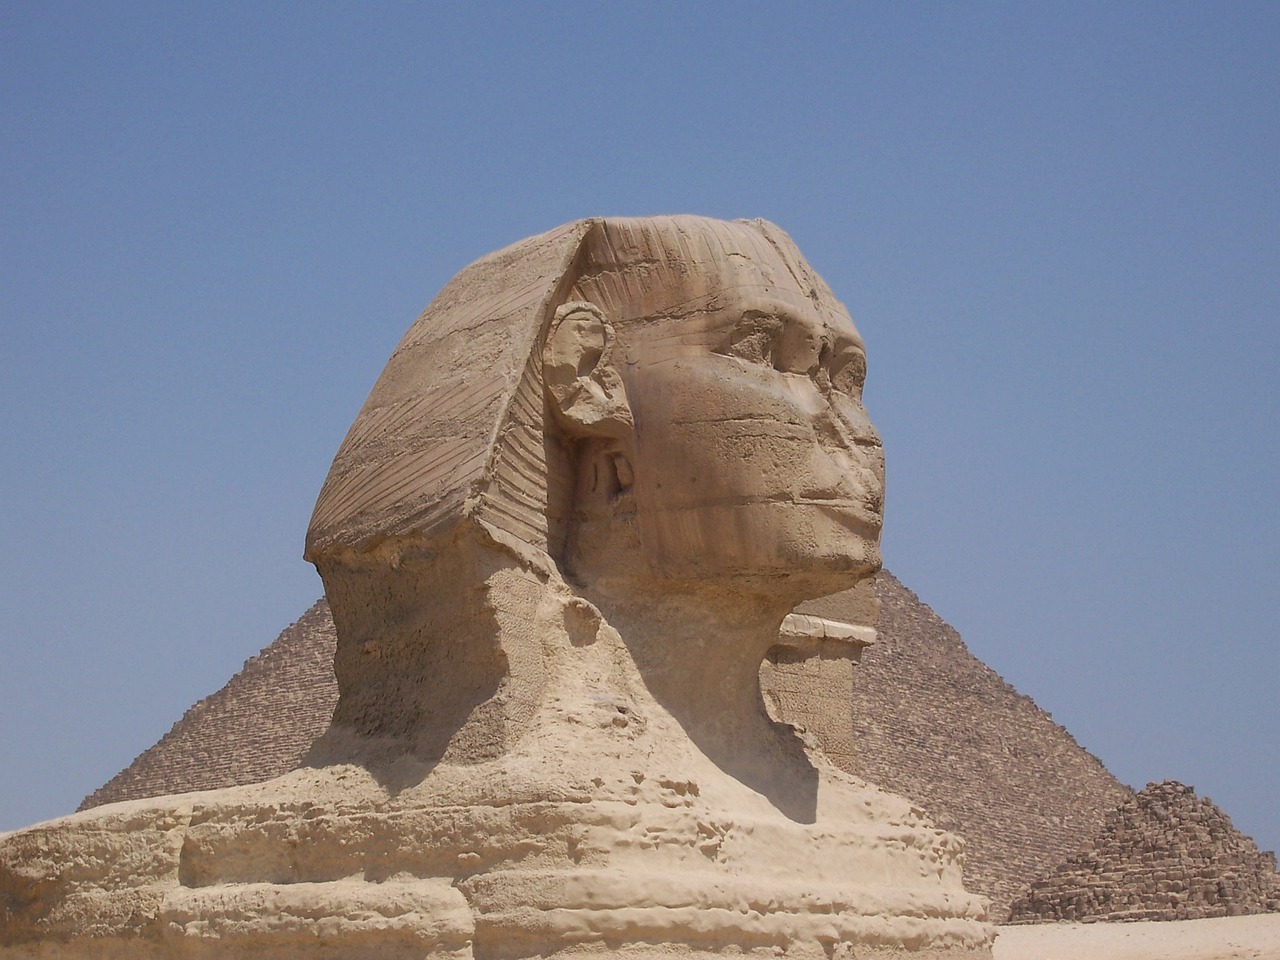 Sphinx of Giza